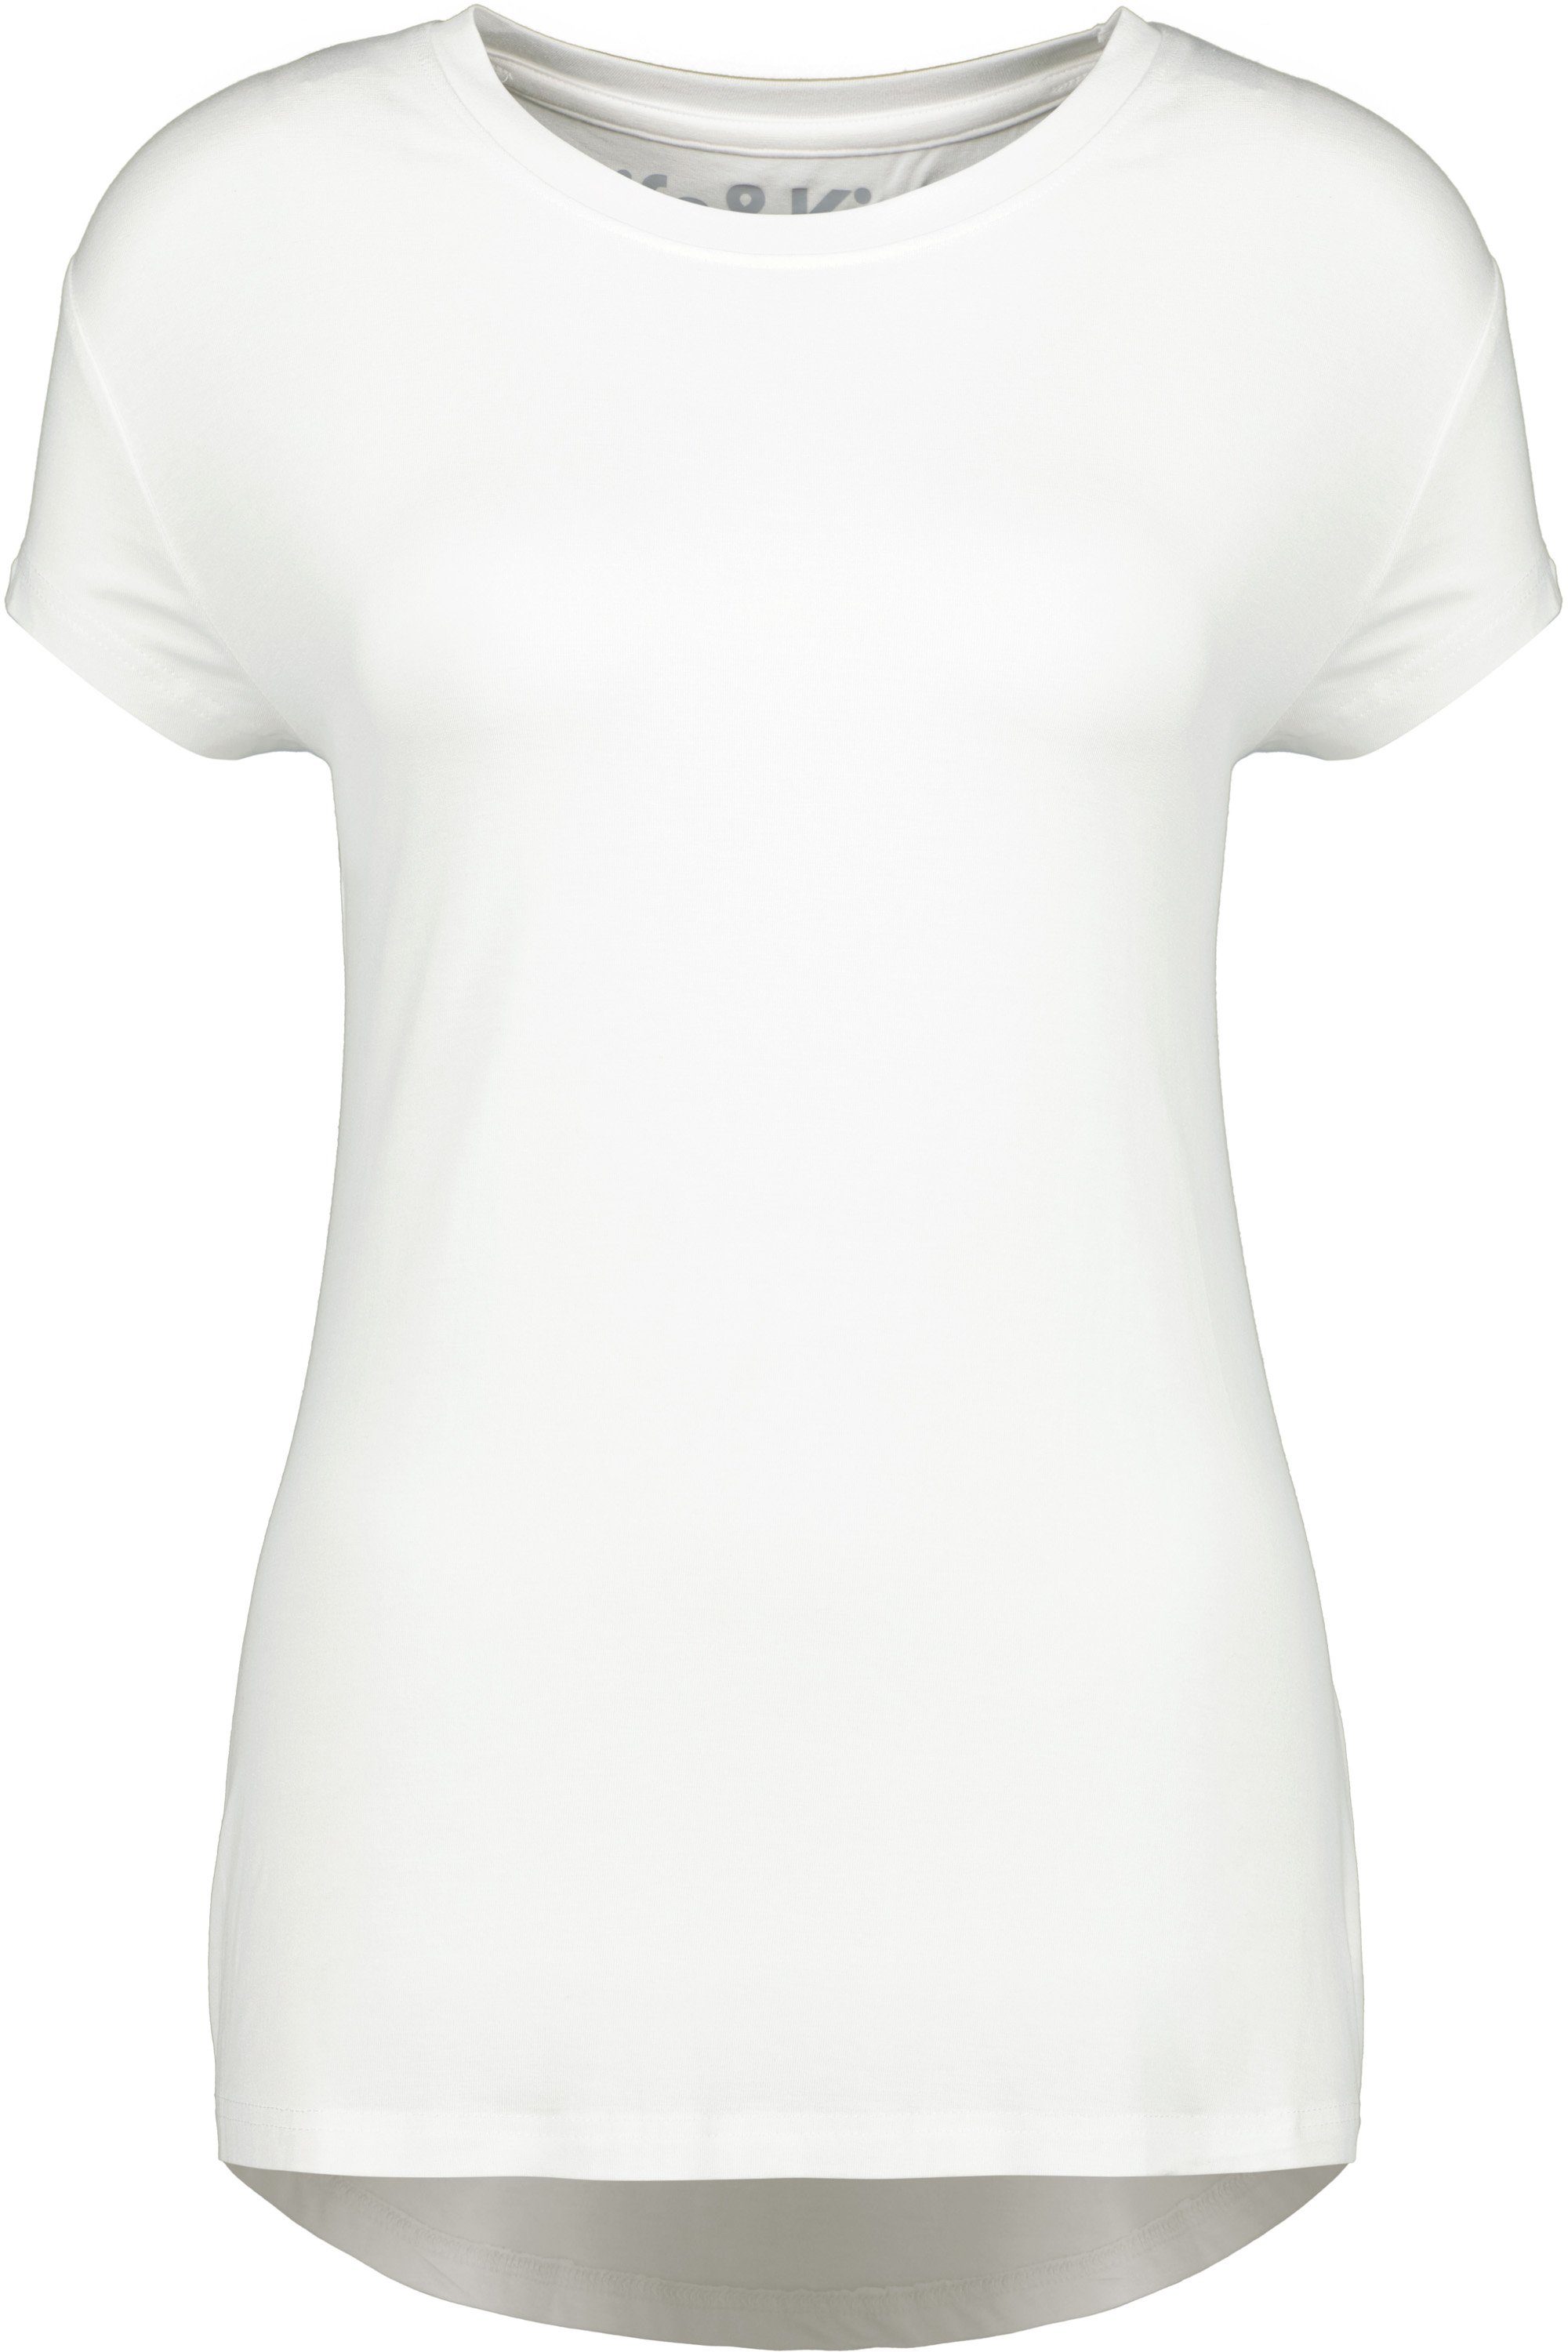 Kurzarmshirt, white A Damen Alife Shirt MimmyAK Shirt Kickin & Rundhalsshirt